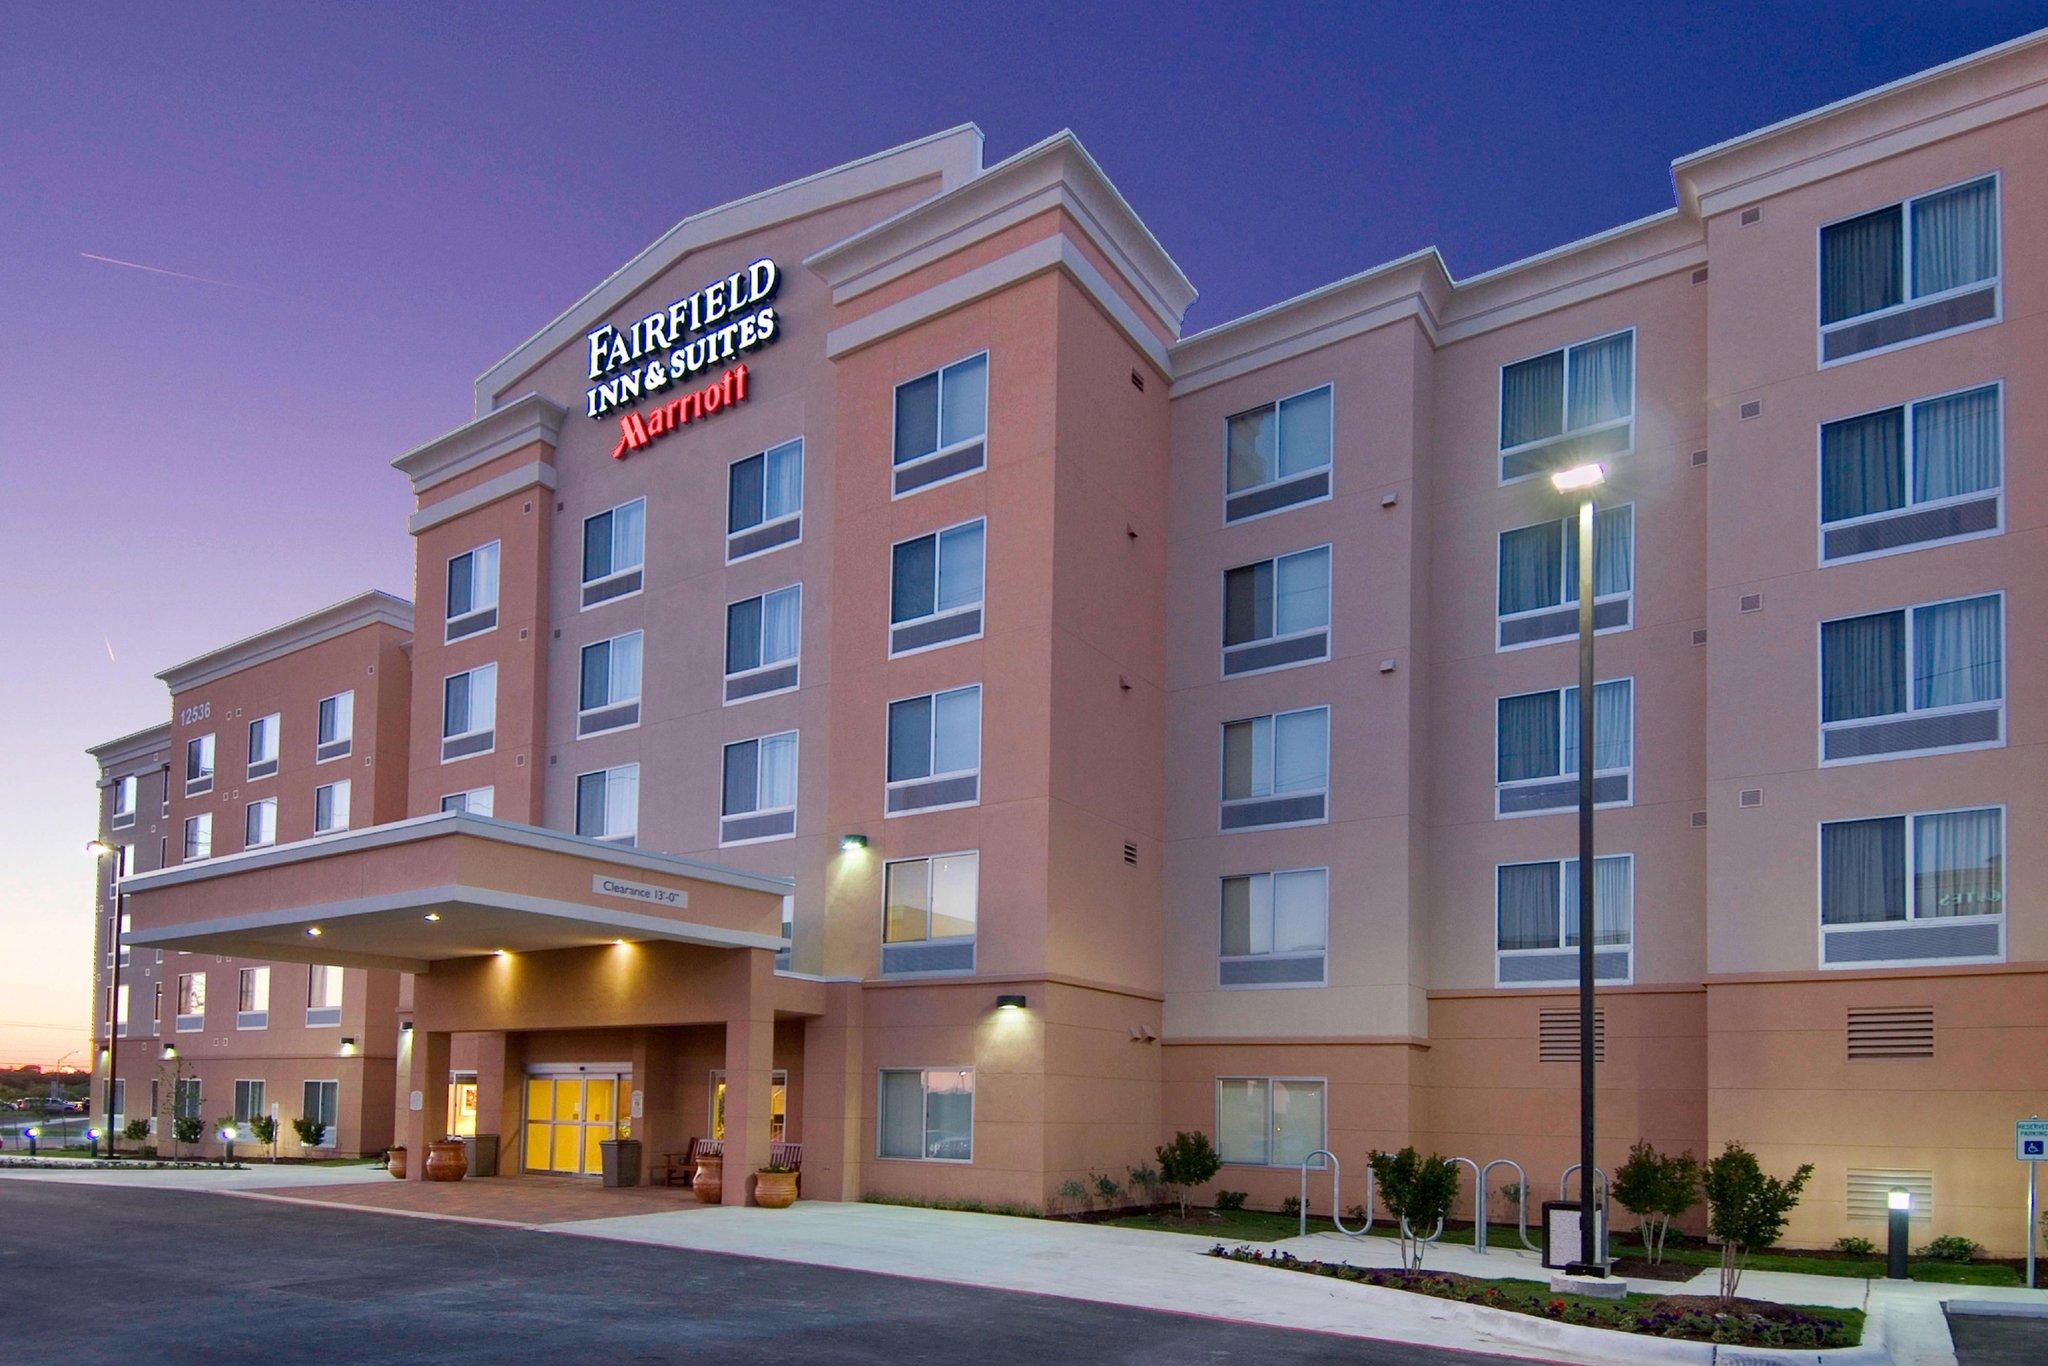 Fairfield Inn & Suites Austin Parmer/Tech Ridge in Austin, TX